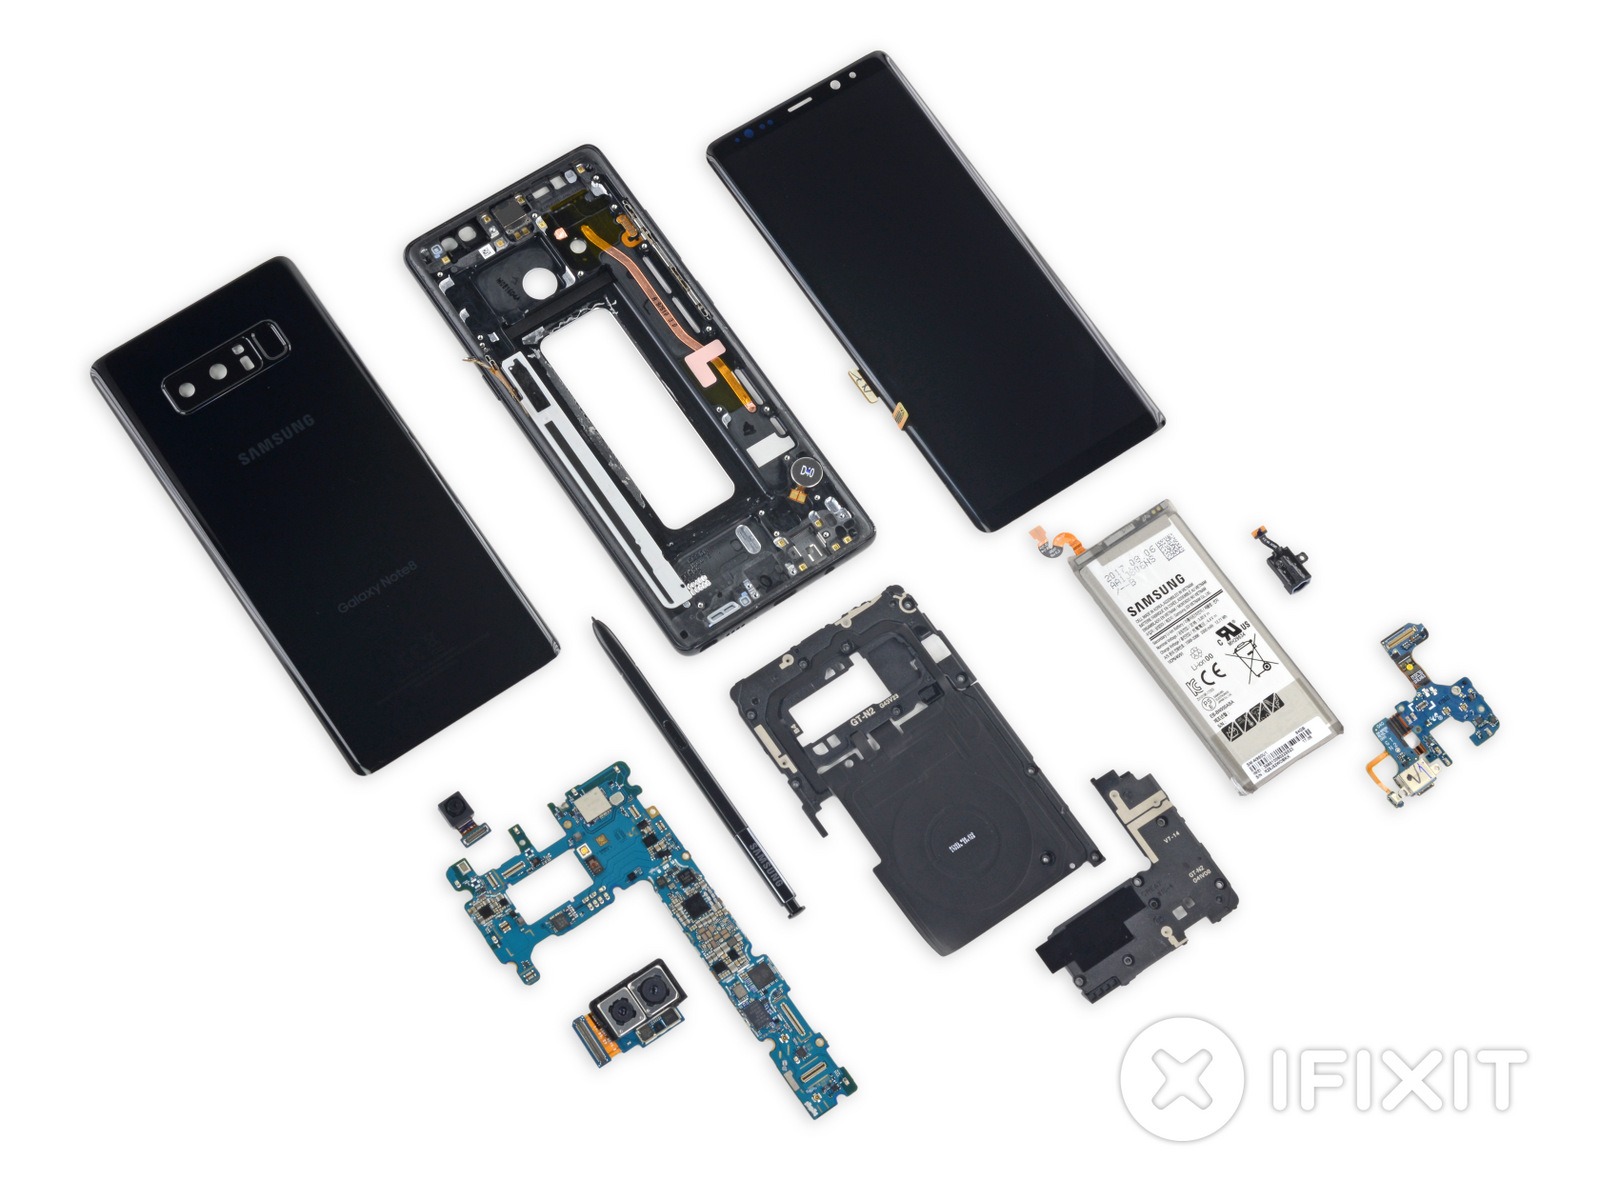 Galaxy Note 8 desmontado